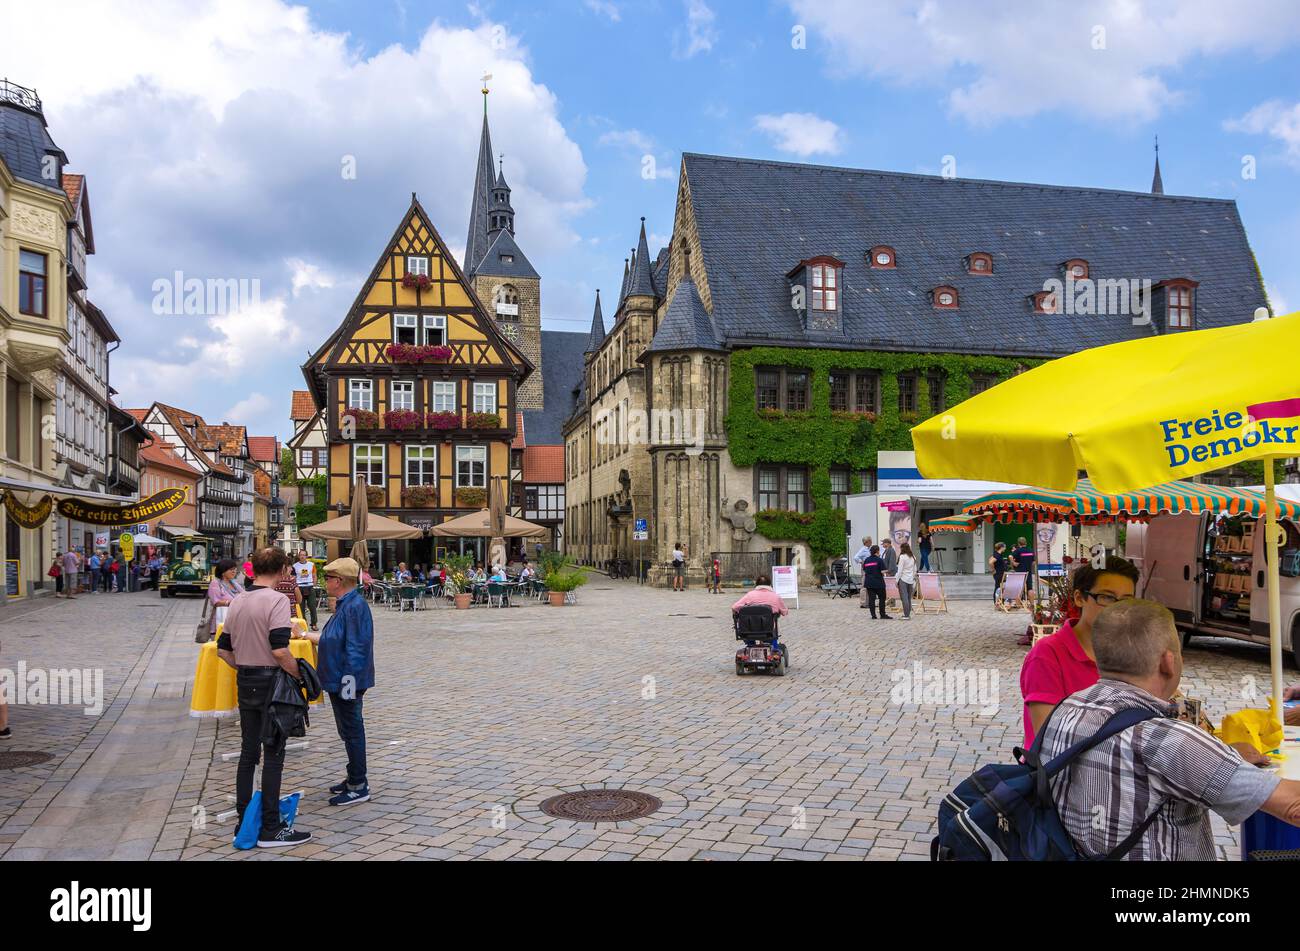 Quedlinburg, Sassonia-Anhalt, Germania: Campagna elettorale per le elezioni federali tedesche dei liberodemocratici (FDP) sulla piazza del mercato. Foto Stock